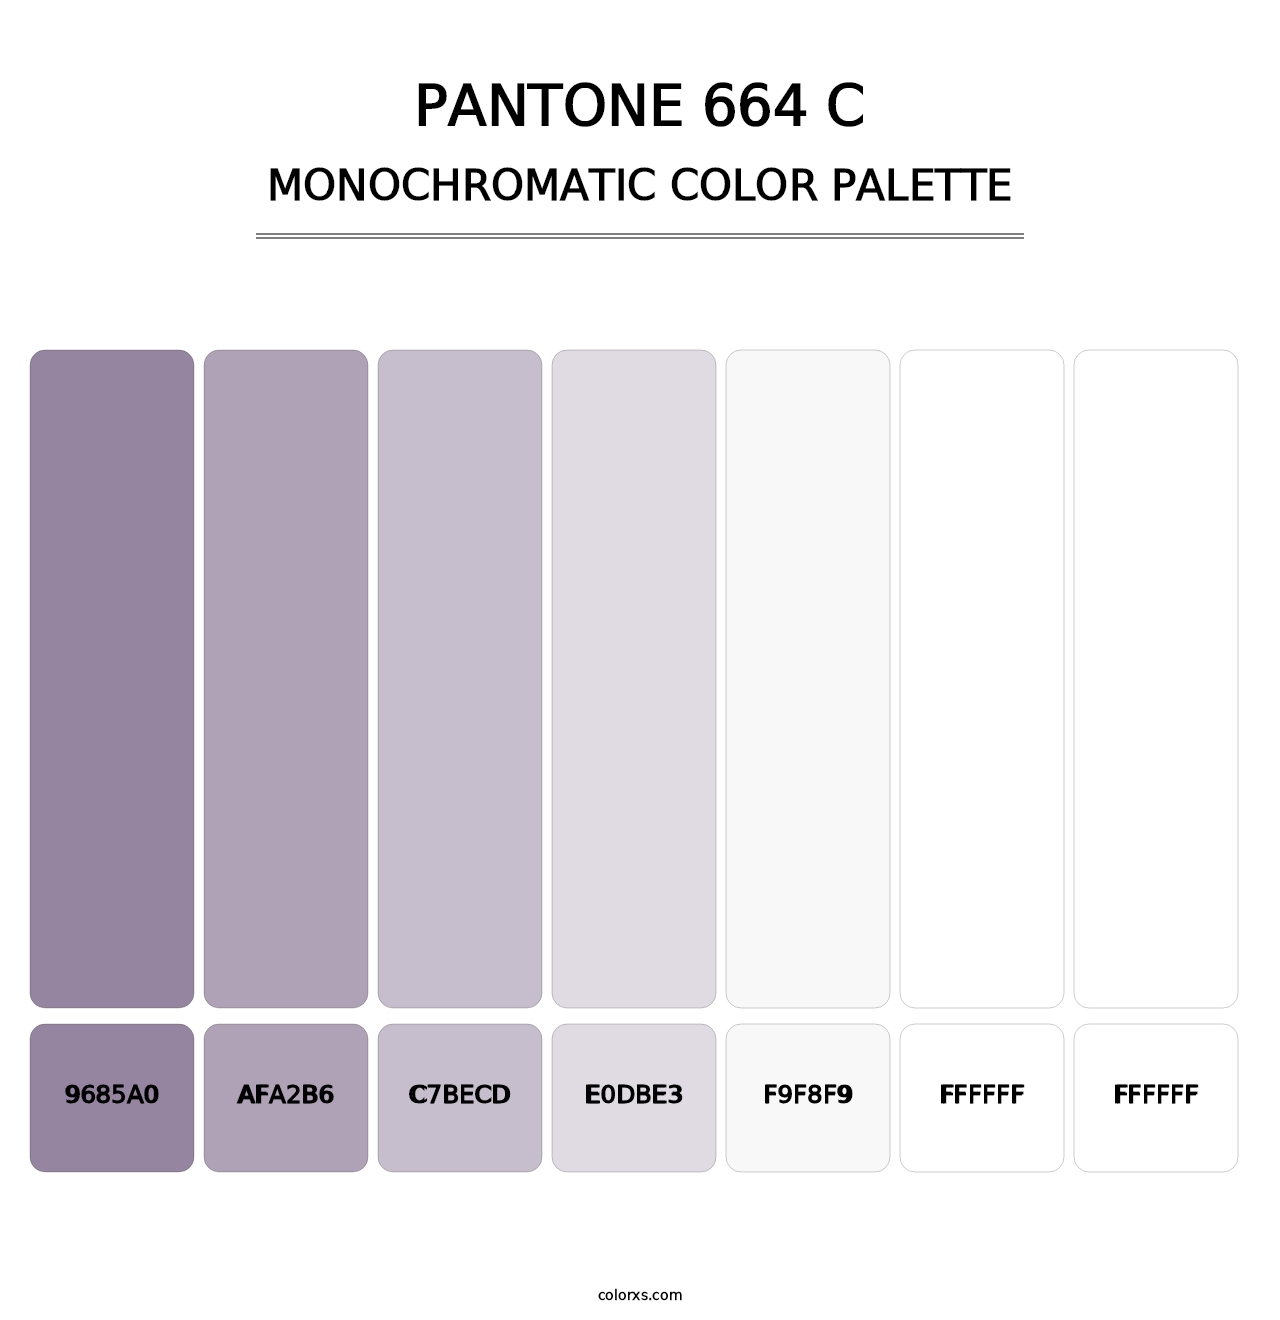 PANTONE 664 C - Monochromatic Color Palette